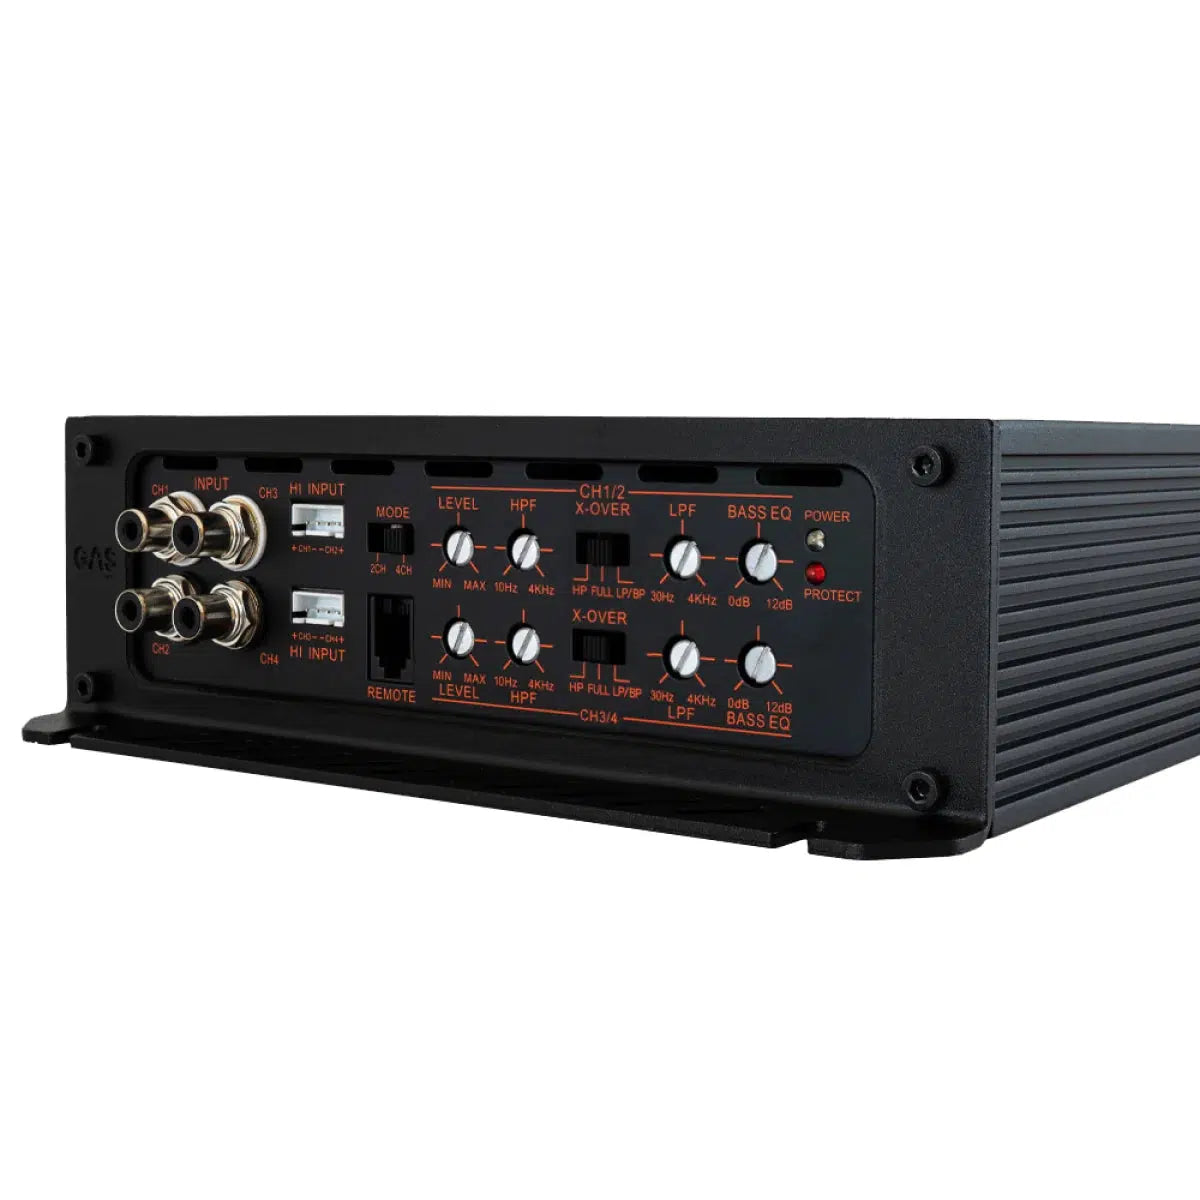 GAS-Max A2 1504-4-channel amplifier-Masori.de